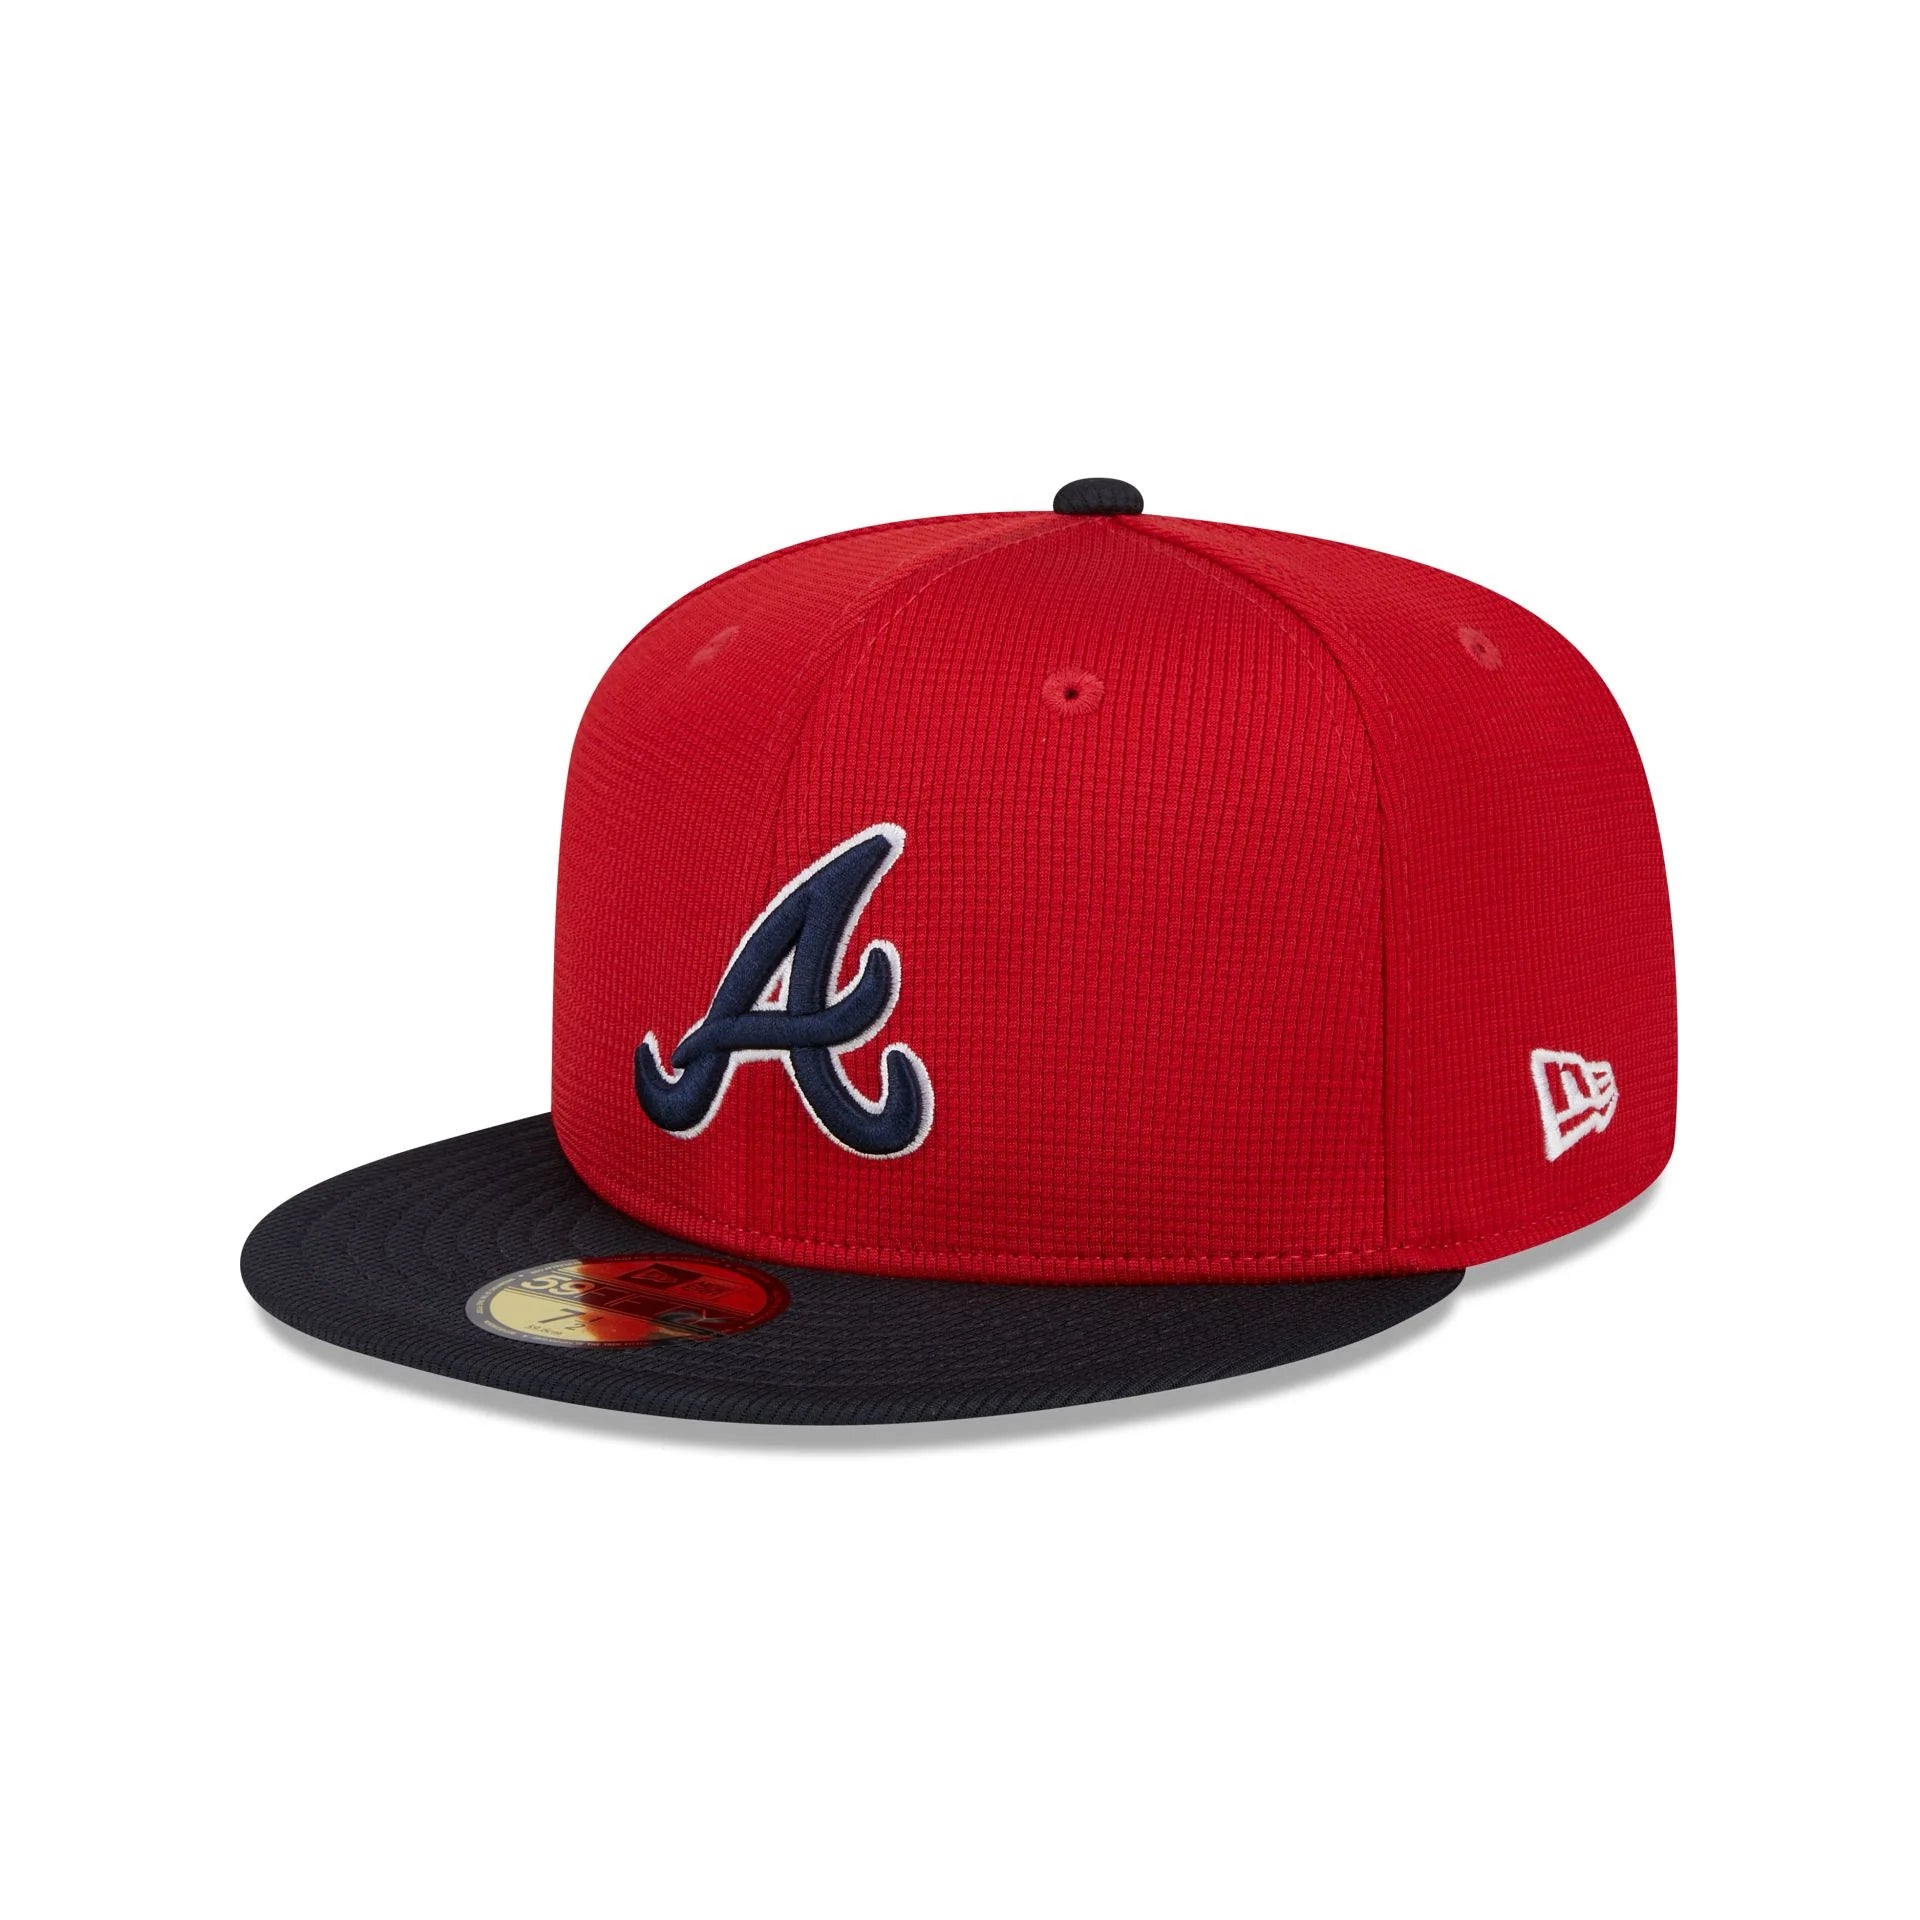 Gorra New Era MLB Atlanta Braves 59Fifty Rojo